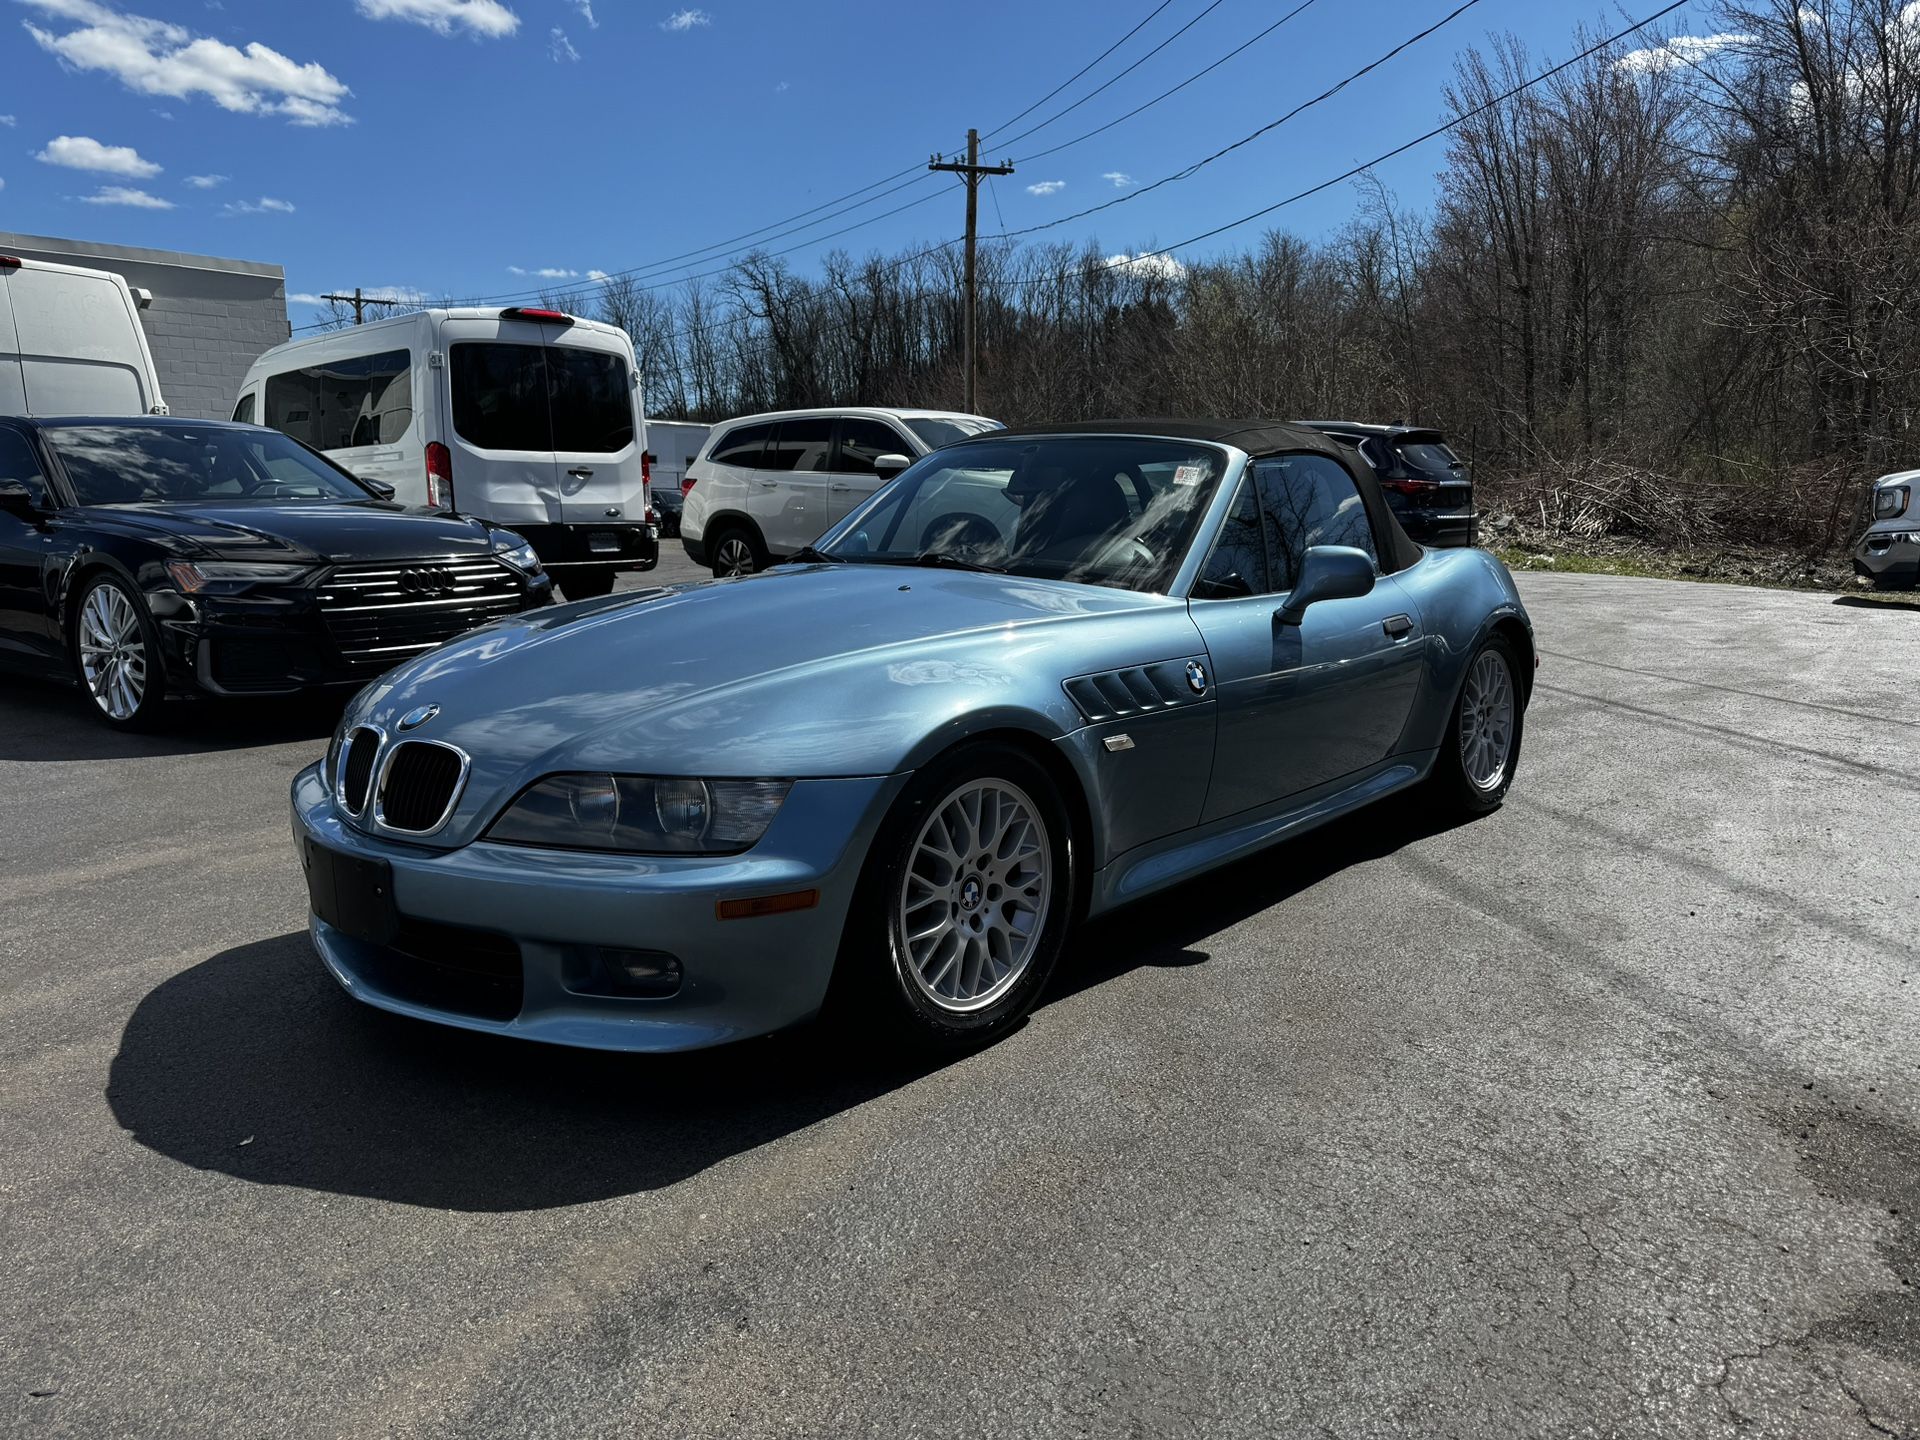 2001 BMW Z3